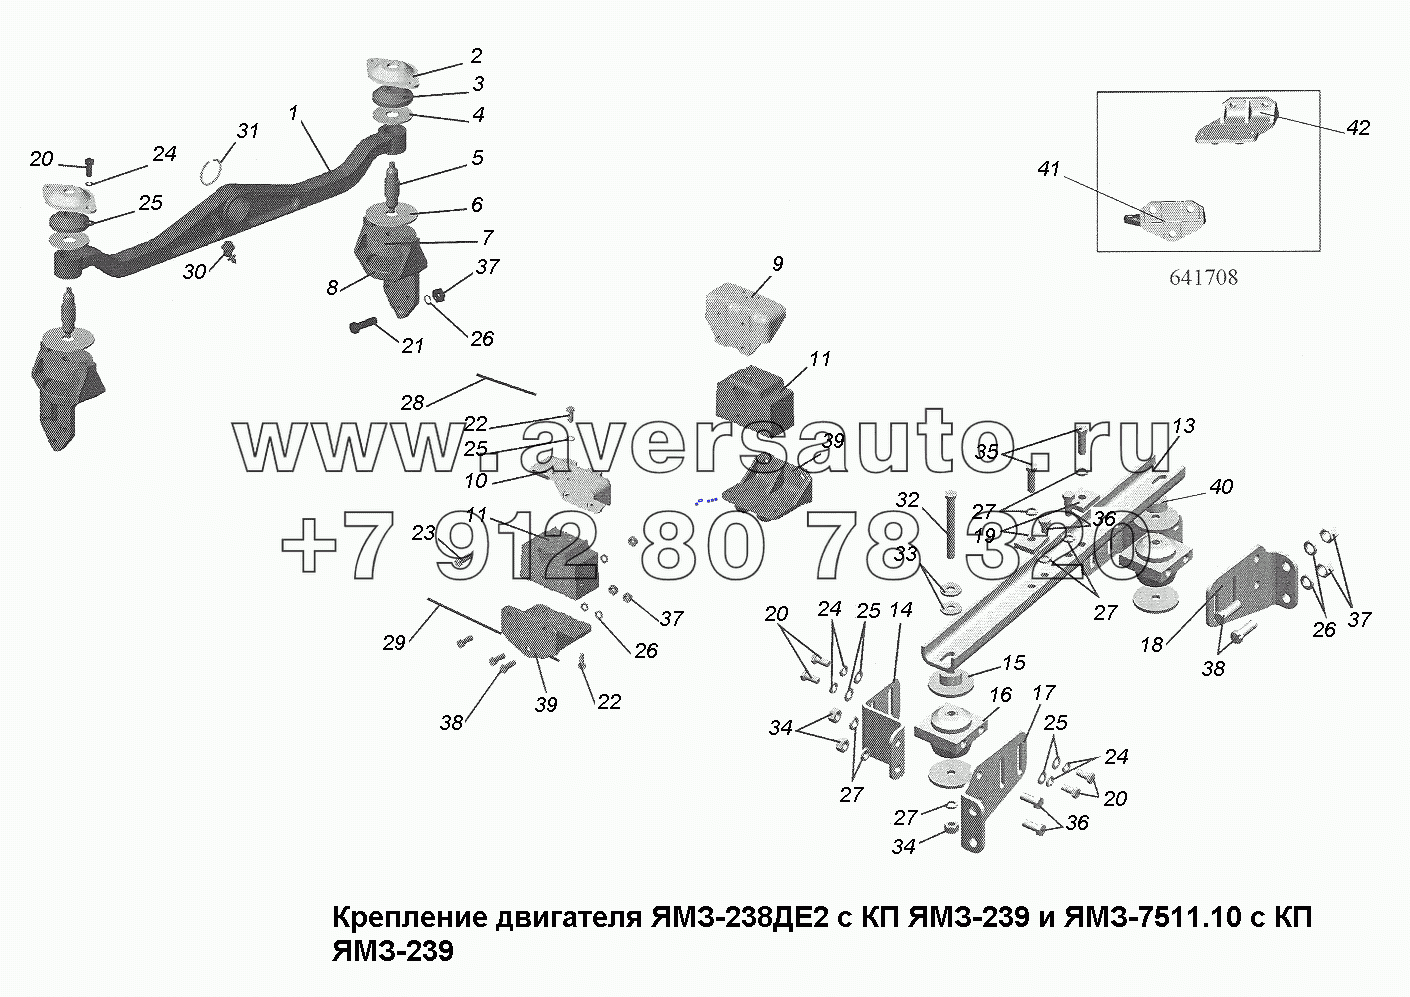 Крепление двигателя ЯМЗ-238 ДЕ2 с КП ЯМЗ-239 и двигателя ЯМЗ-7511.10 с КП ЯМЗ-239